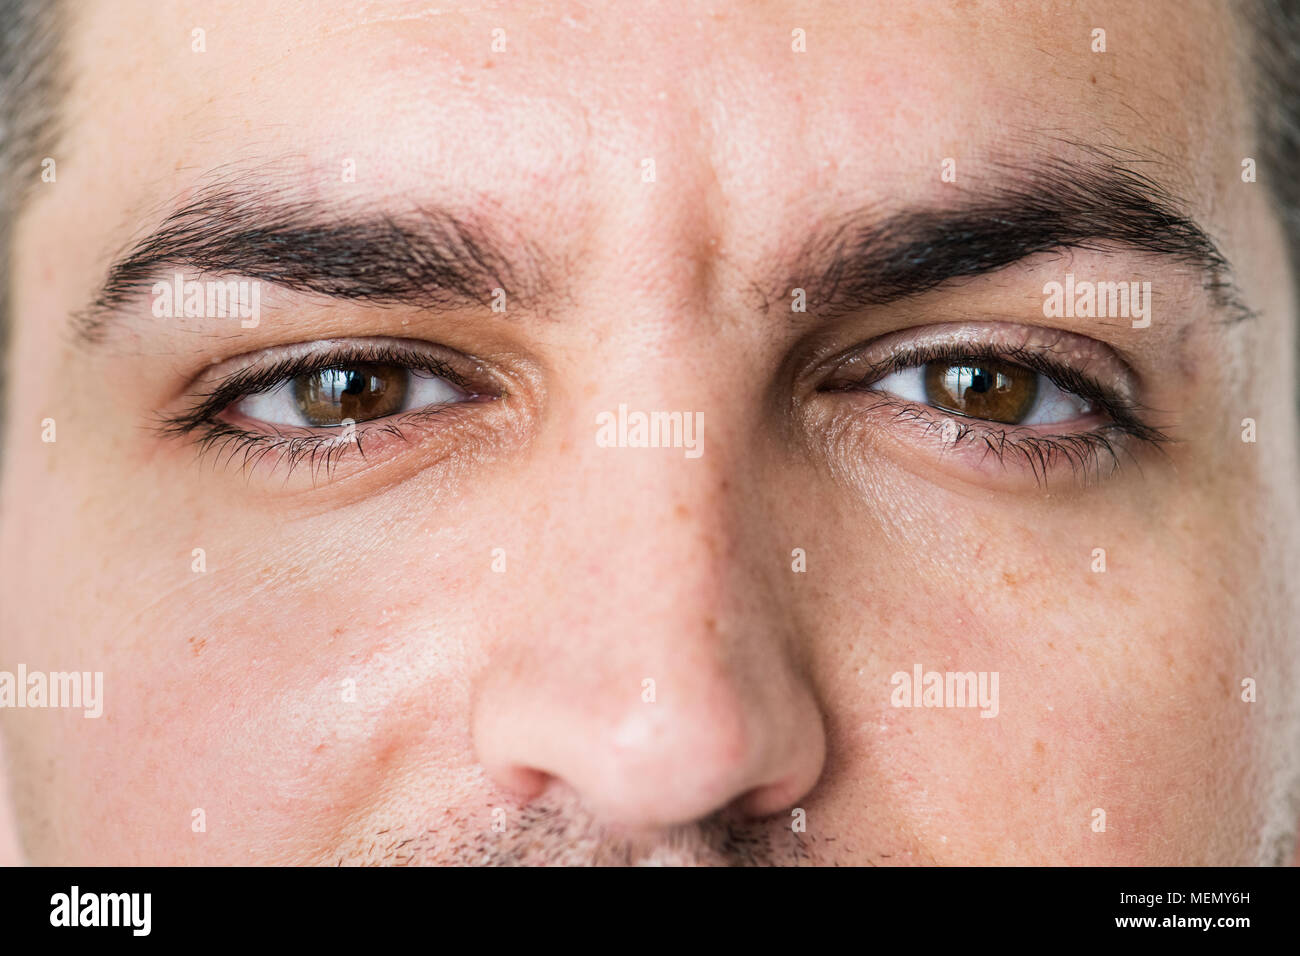 Portrait of white man closeup on eyes Stock Photo